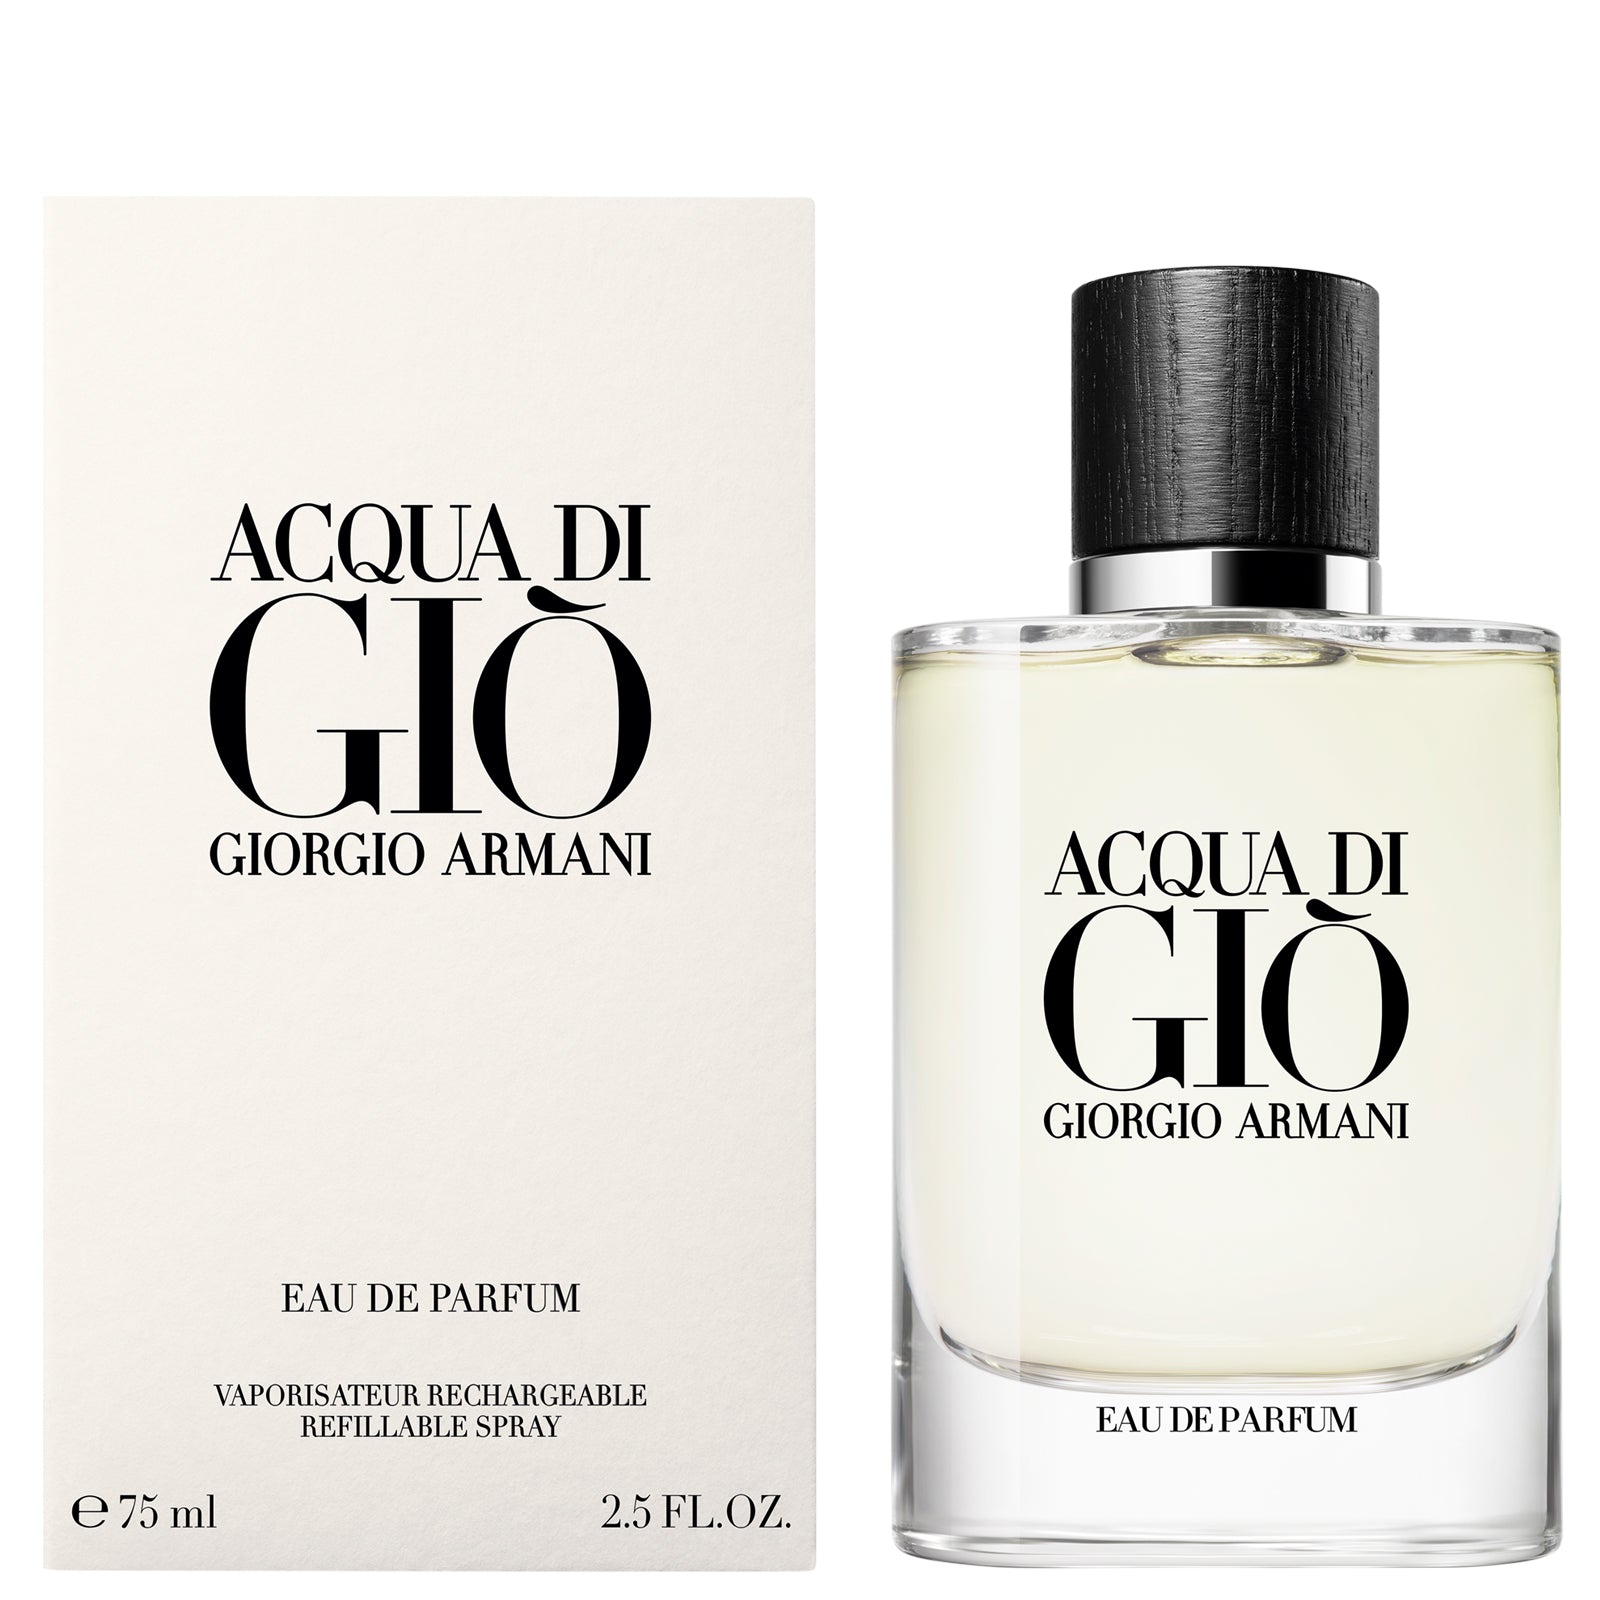 Giorgio Armani Acqua Di Gio Eau de Parfum Spray 75ml - Feel Gorgeous